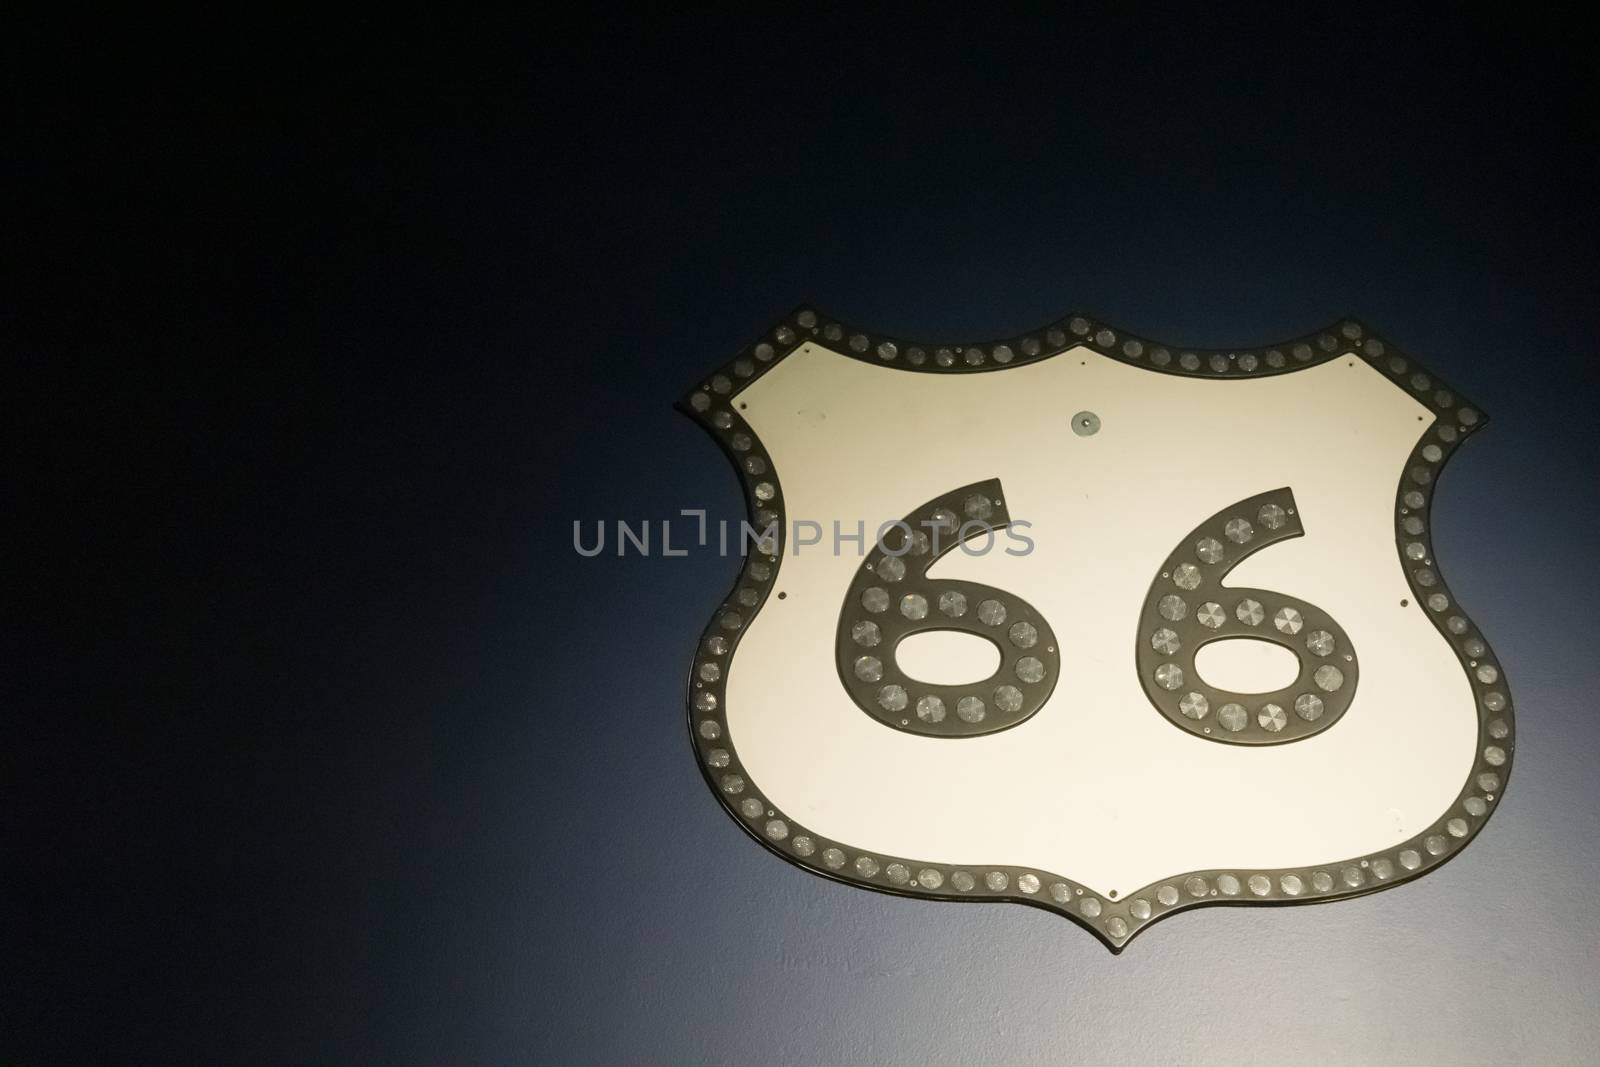 Vintage Route 66 sheild sign on dark background.